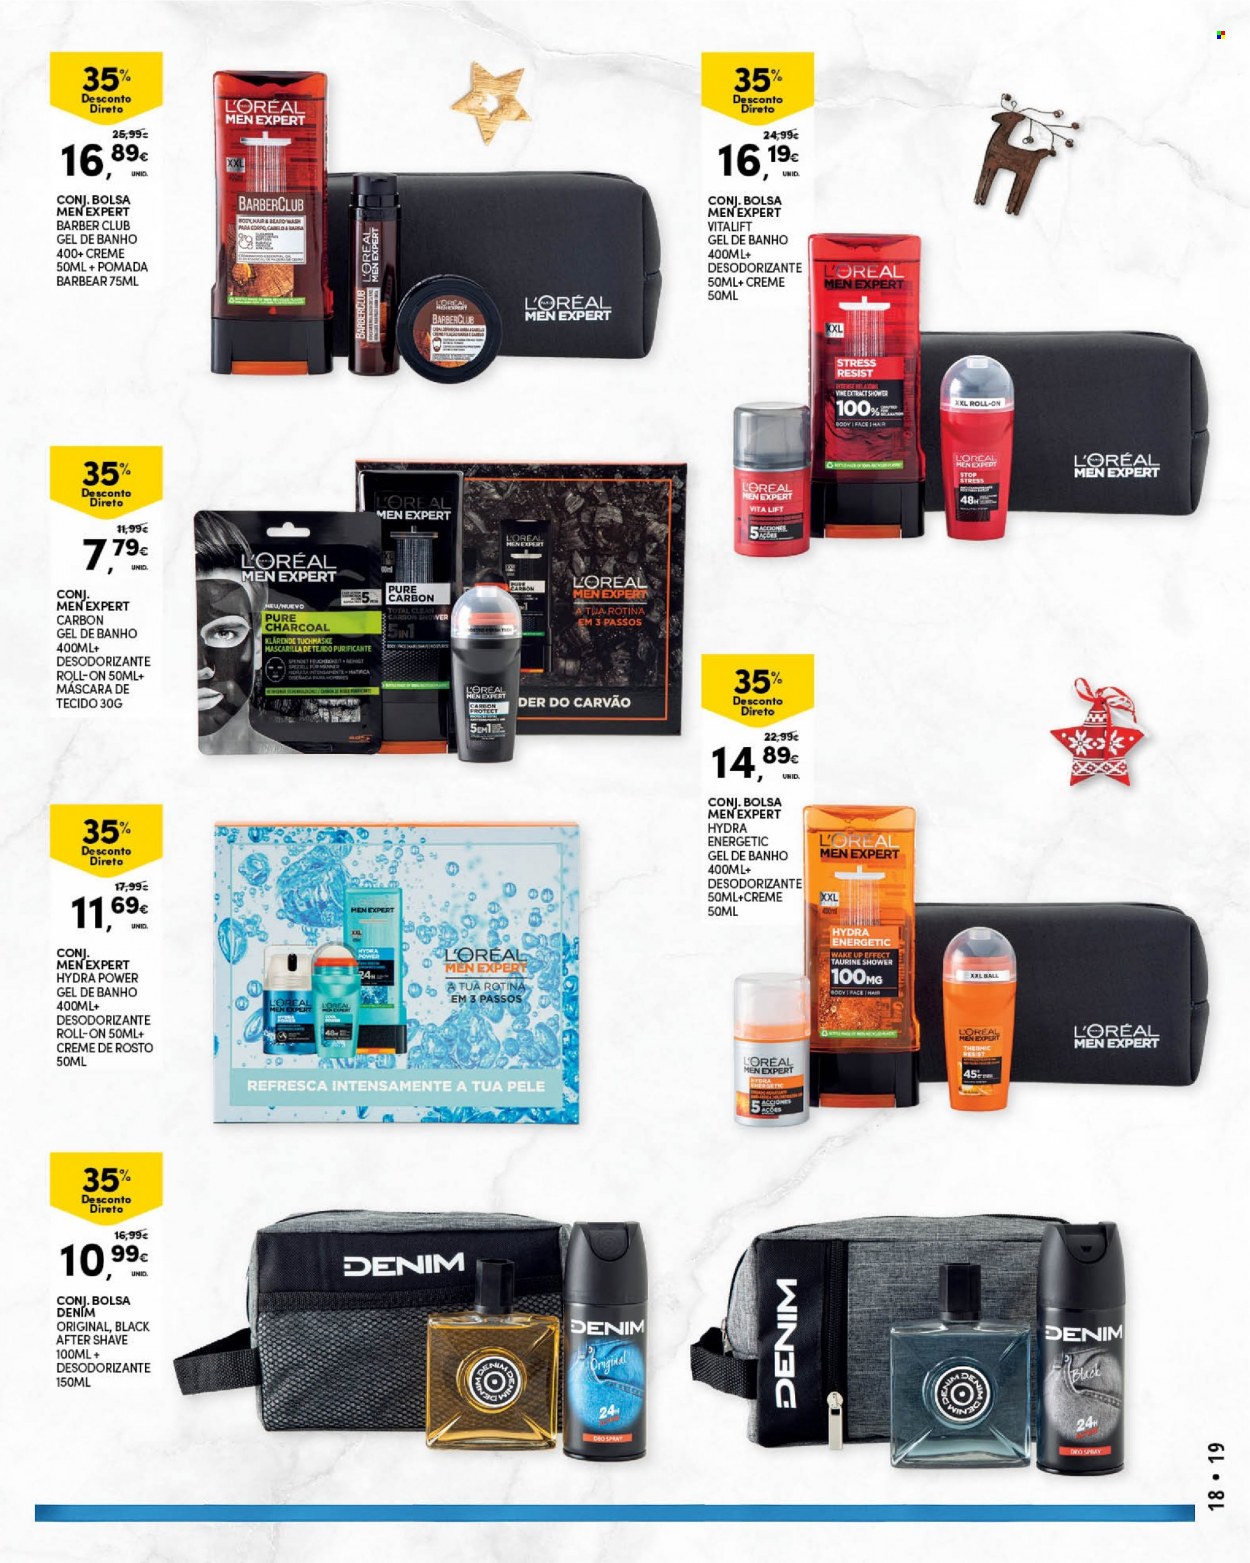 thumbnail - Folheto Continente - 9.11.2021 - 12.12.2021 - Produtos em promoção - L’Oréal, gel de banho, máscara, creme facial, desodorante, bolsa, carvão barbecue. Página 19.